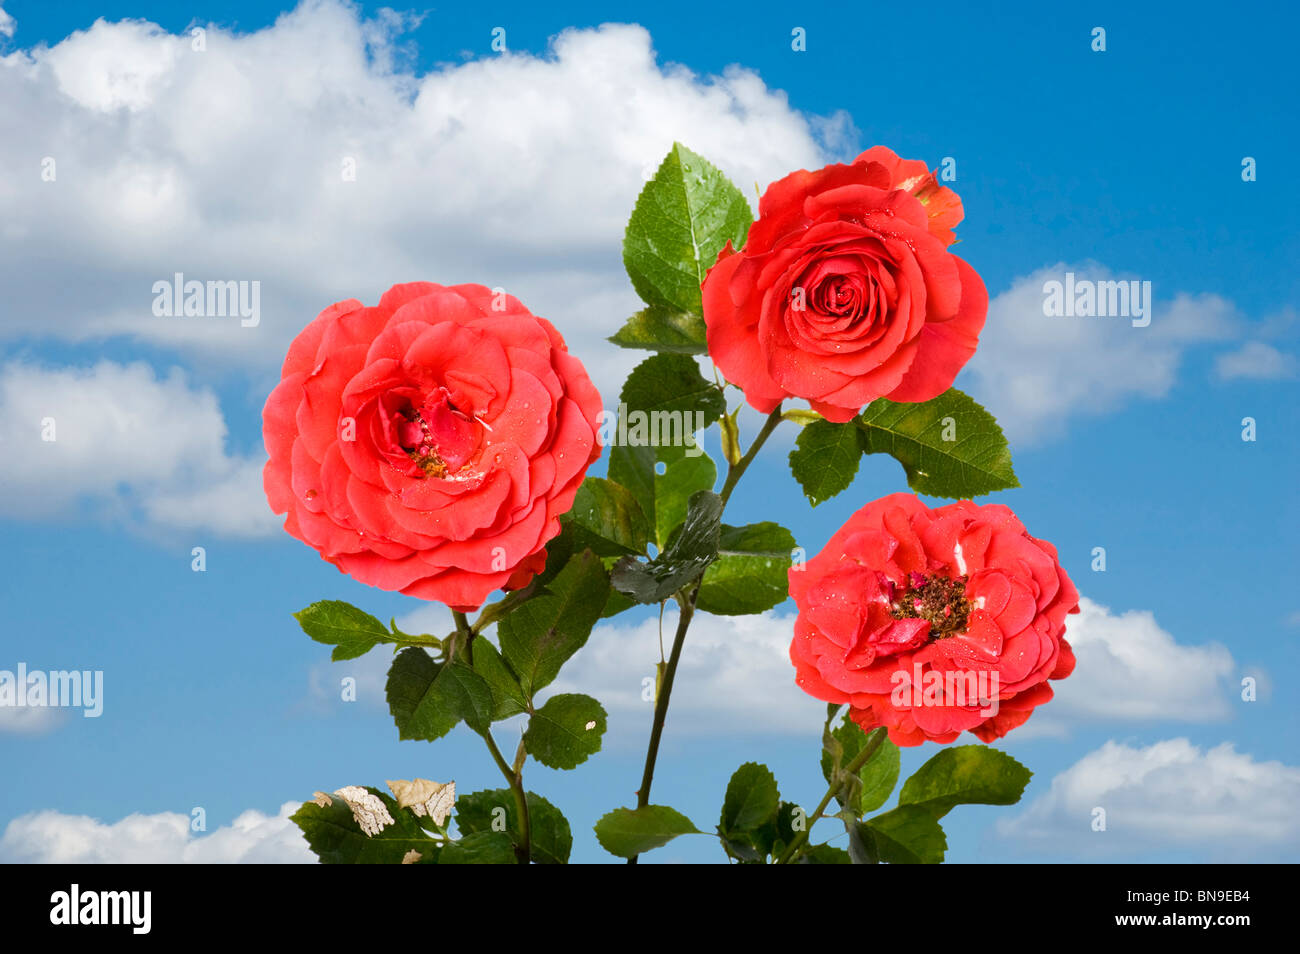 Objekt auf blauem Himmel - Blumen rose Nahaufnahme Stockfoto